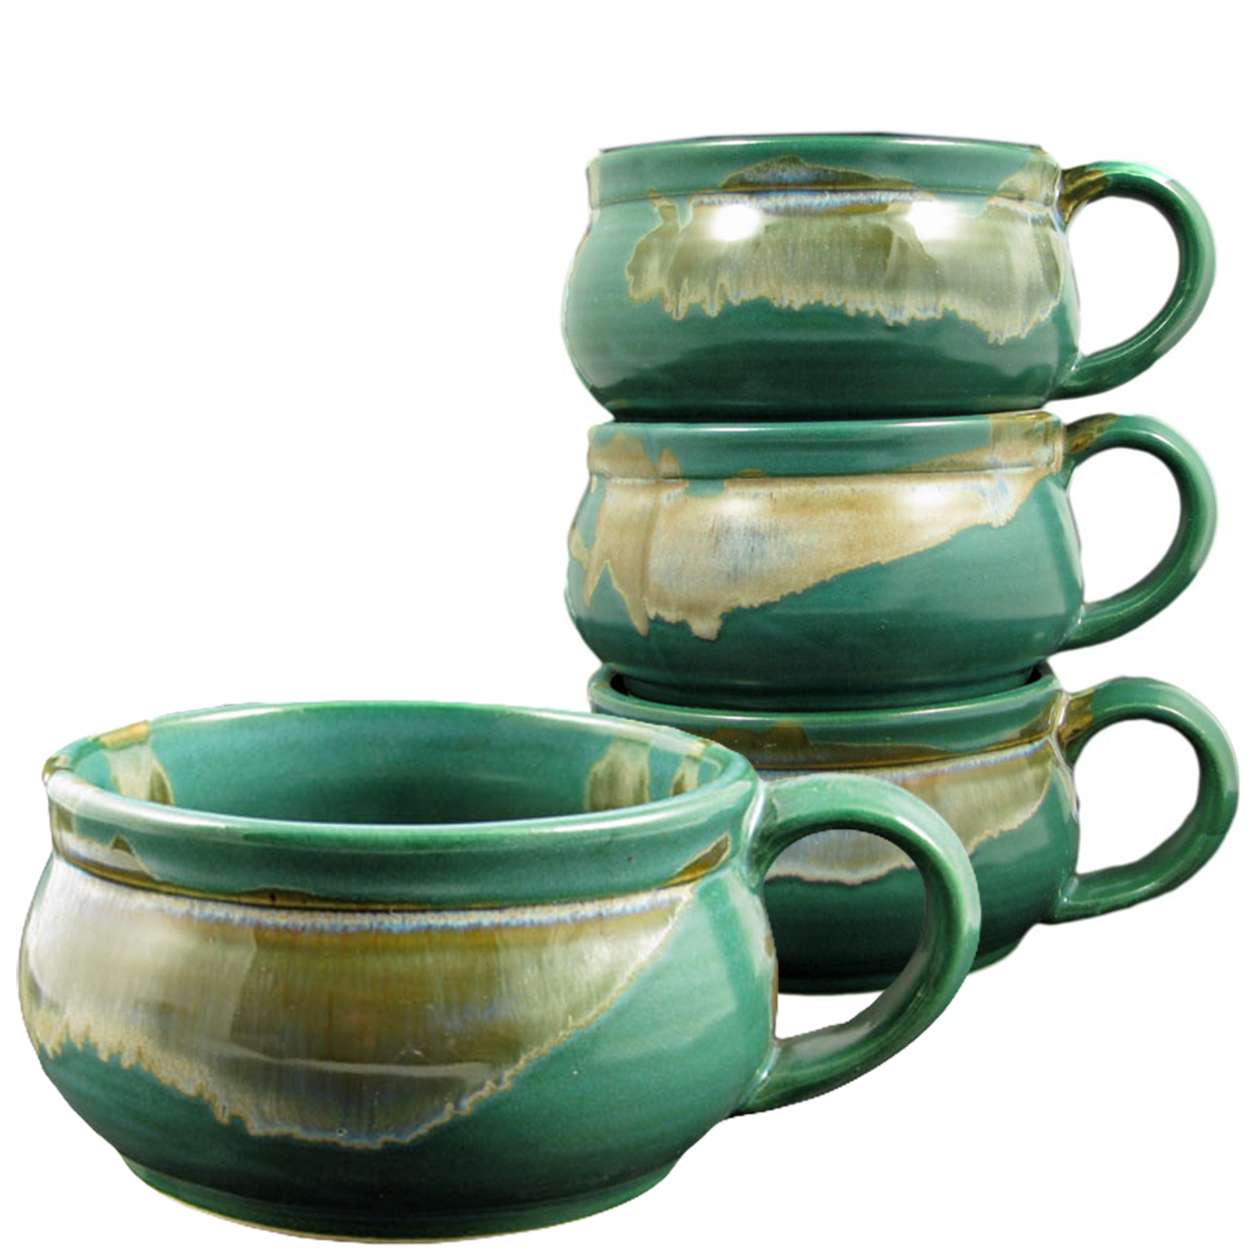 Prado Stoneware Stacking Soup Cups Set of 4 Matte Green